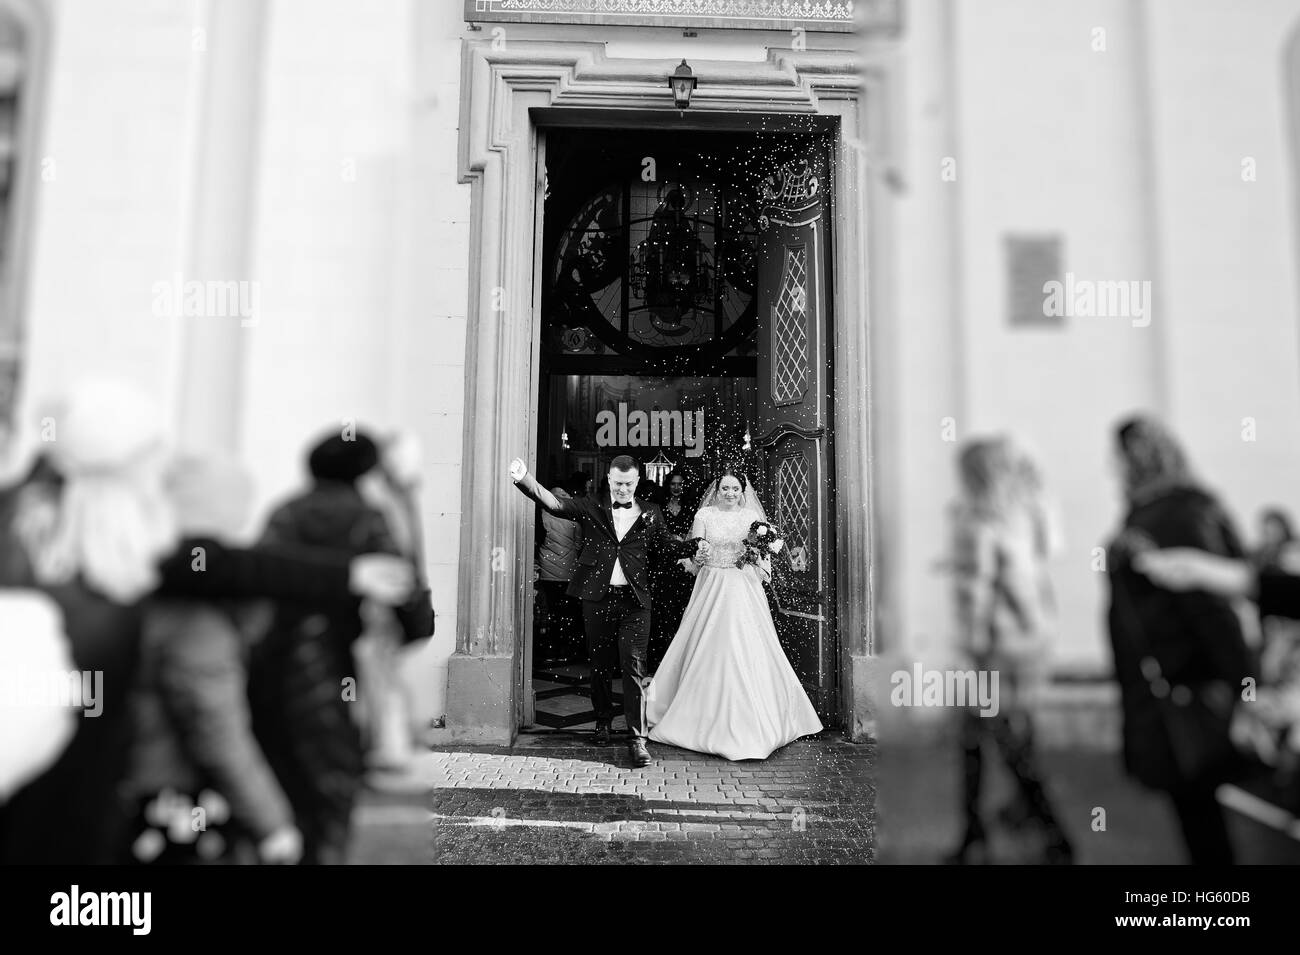 Gäste geduscht Brautpaar mit bunten Reis nach der Trauung in der Kirche. Schwarz / weiß Foto Stockfoto